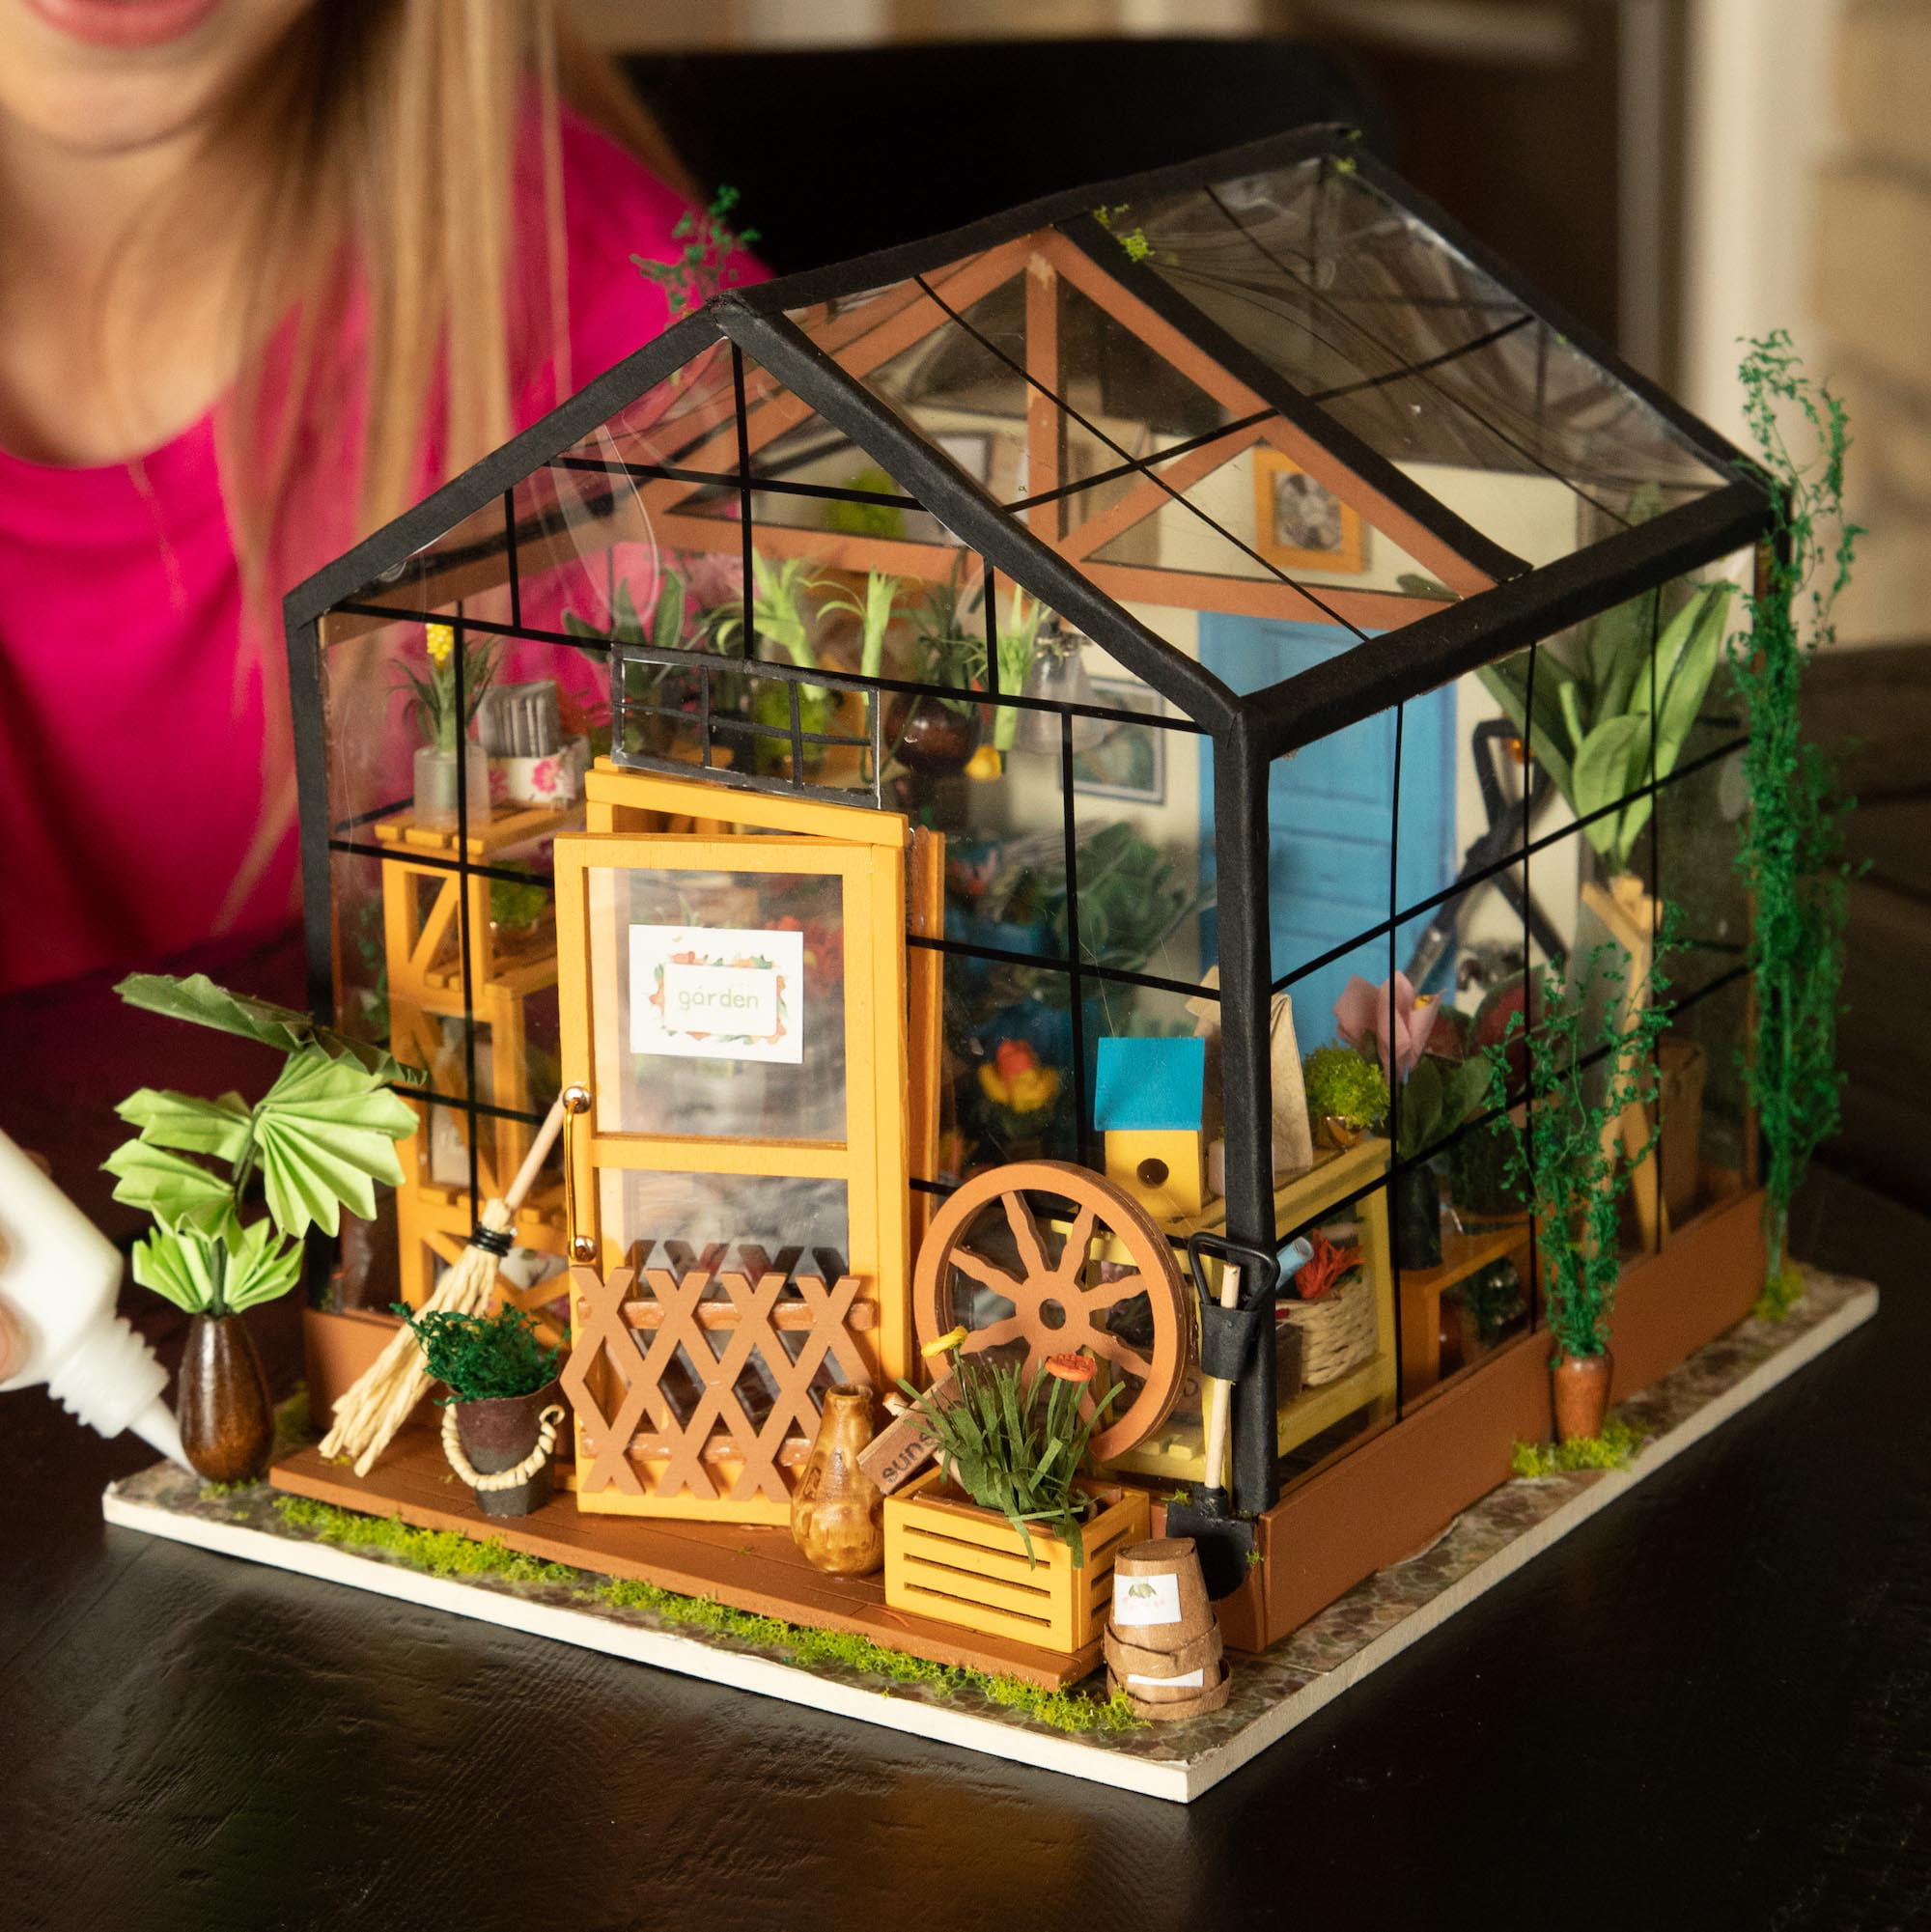 Gracies Greenhouse Fat Brain Toys DIY Miniature Model Kit 